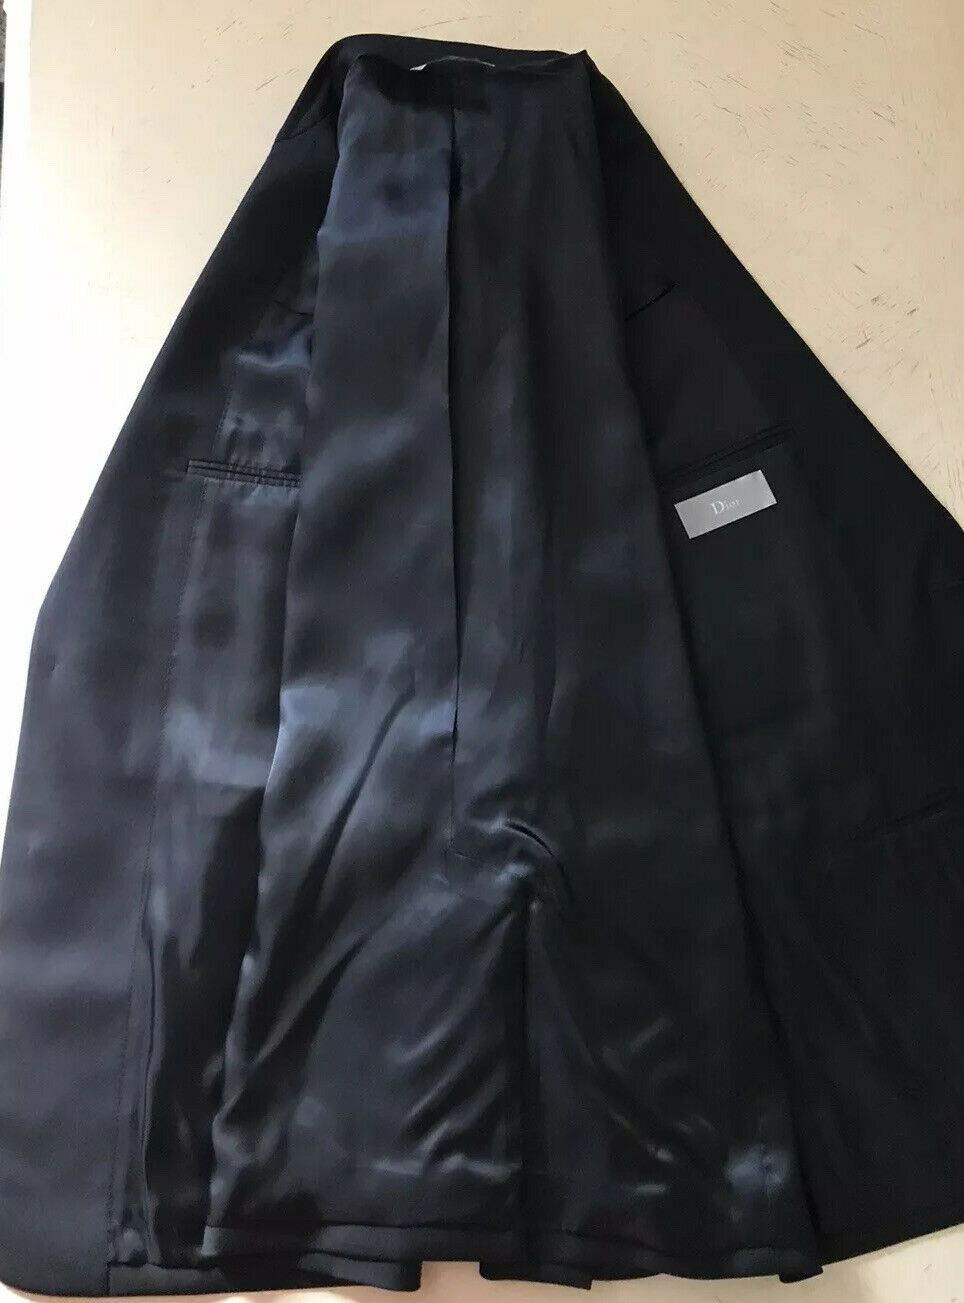 NWT $3250 Dior Мужская спортивная куртка Блейзер Черный 40R США (50R ЕС) Италия